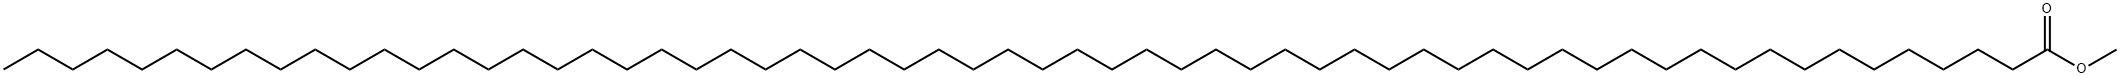 Hexacontanoic acid methyl ester Structure